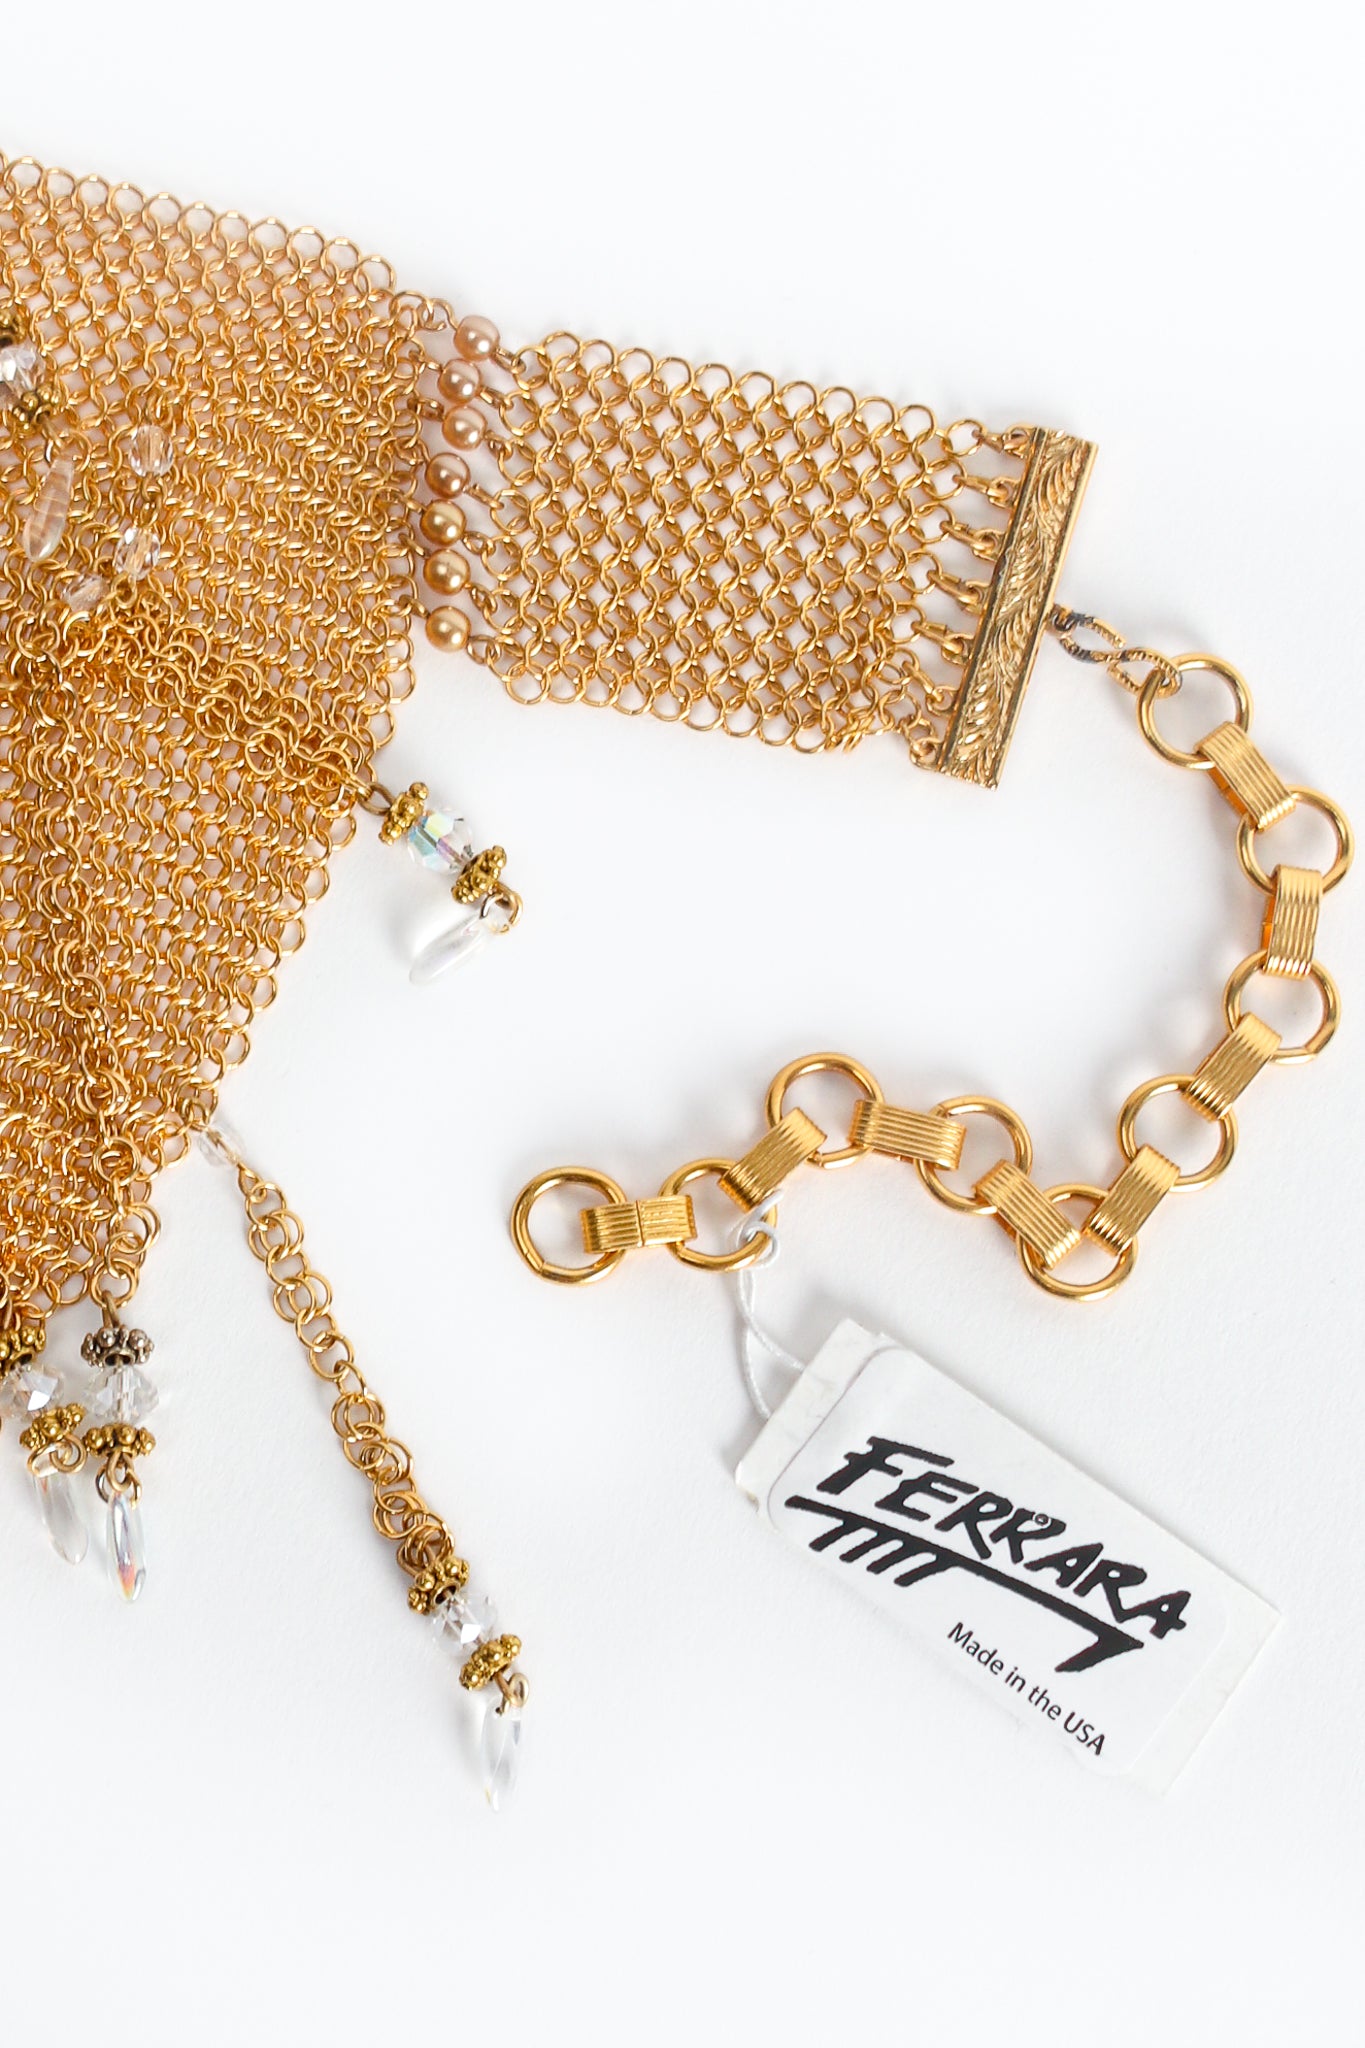 Vintage Anthony Ferrara Plated Ring Mesh Waterfall Bead Pearl Bib Necklace Hang Tag at Recess LA